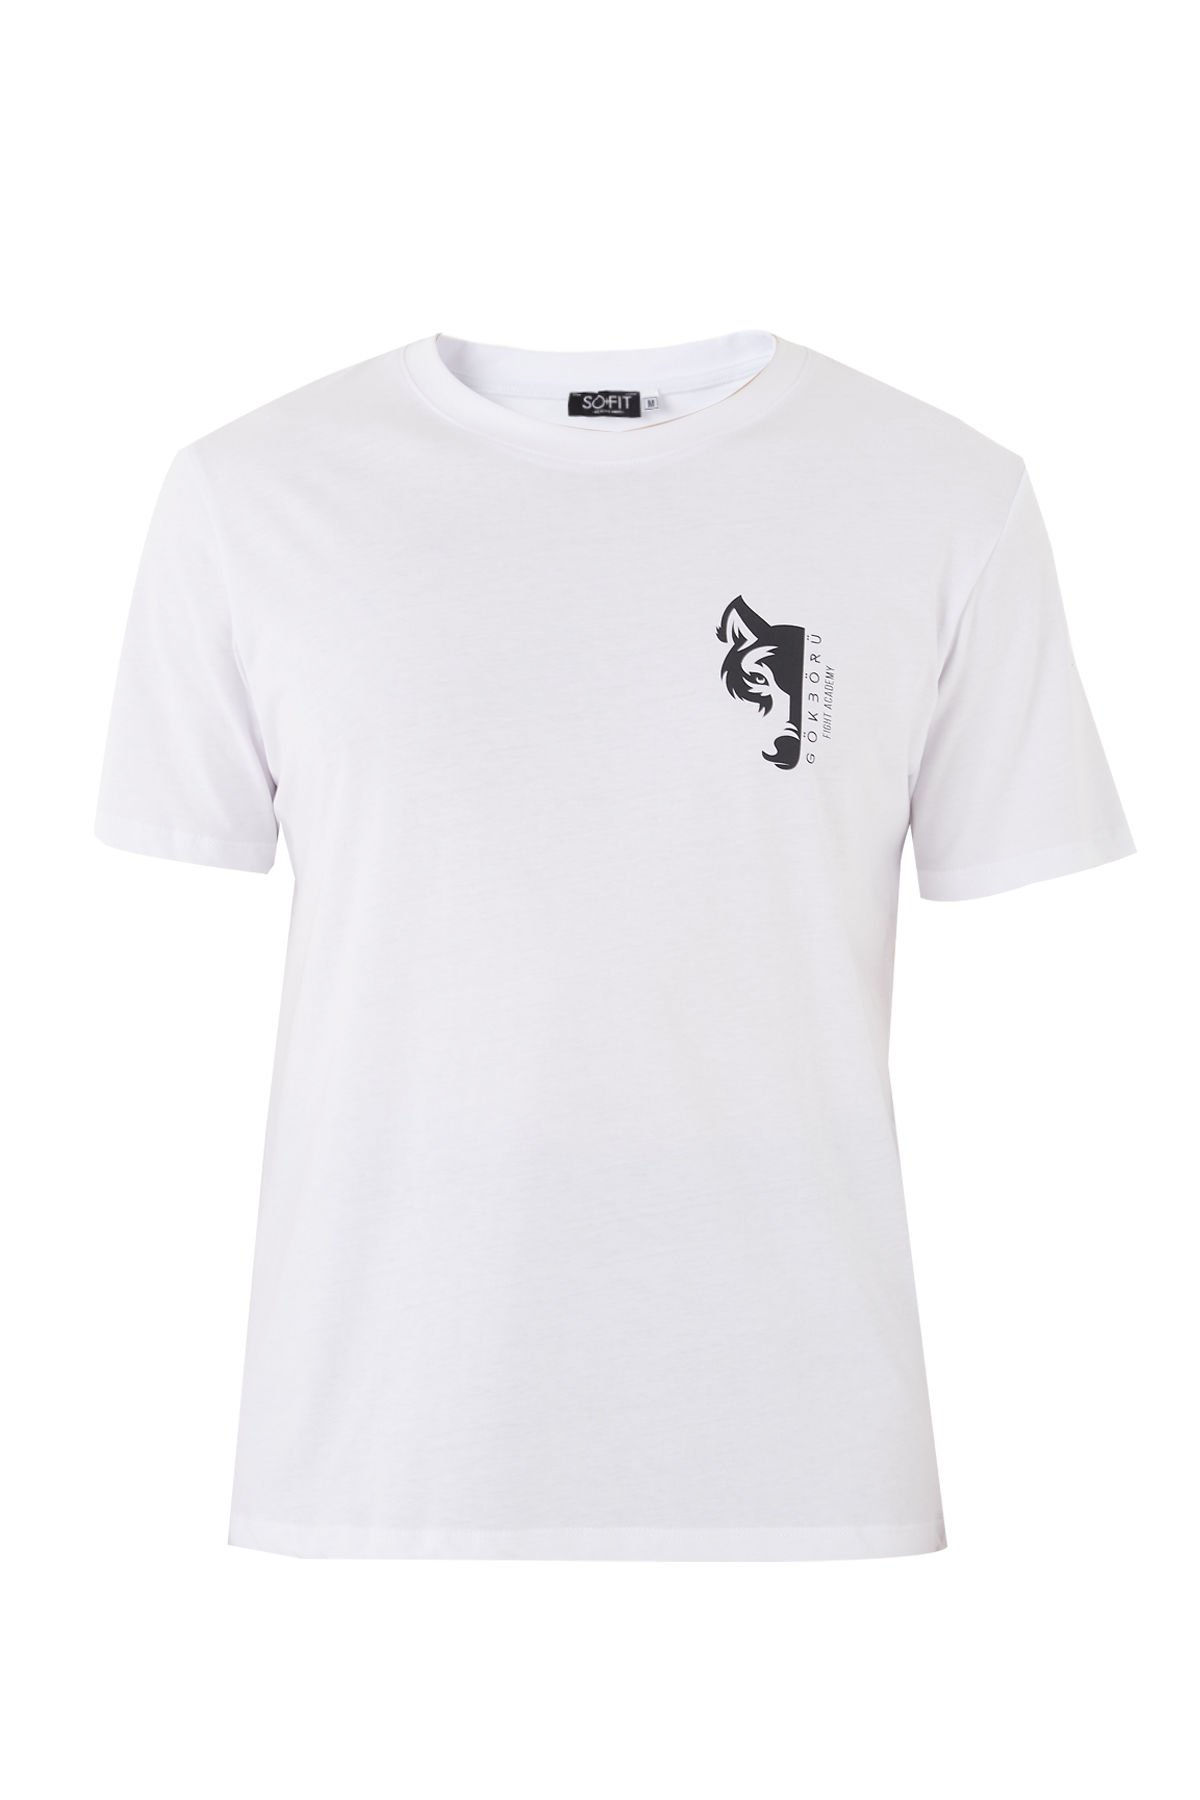 Gökbörü Stronger Oversize T-Shirt Beyaz (Unisex)